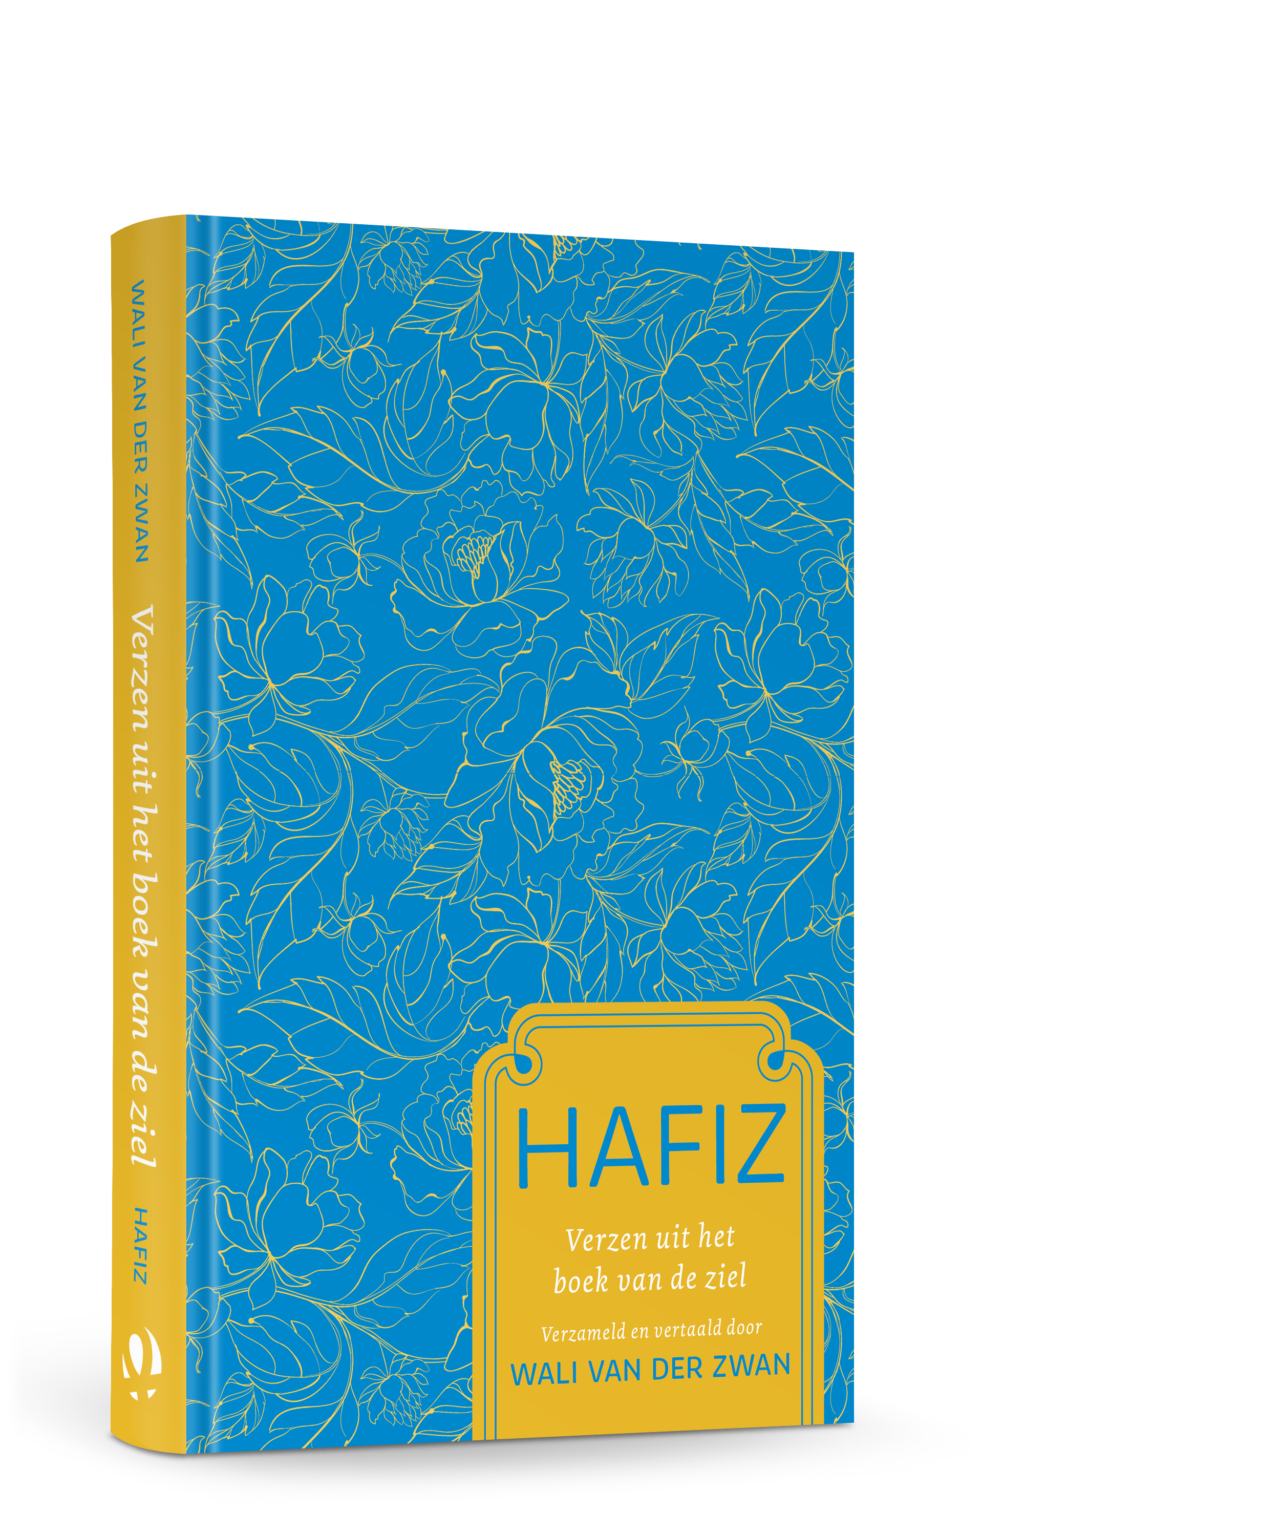 3D-versie van de cover van Hafiz - Verzen uit het boek van de ziel. De cover is lichtblauw met een geel bloempatroon. Rechtsonderin een geel vlak met daarin titel, auteursnaam en de naam van de vertaler: Wim van der Zwan.